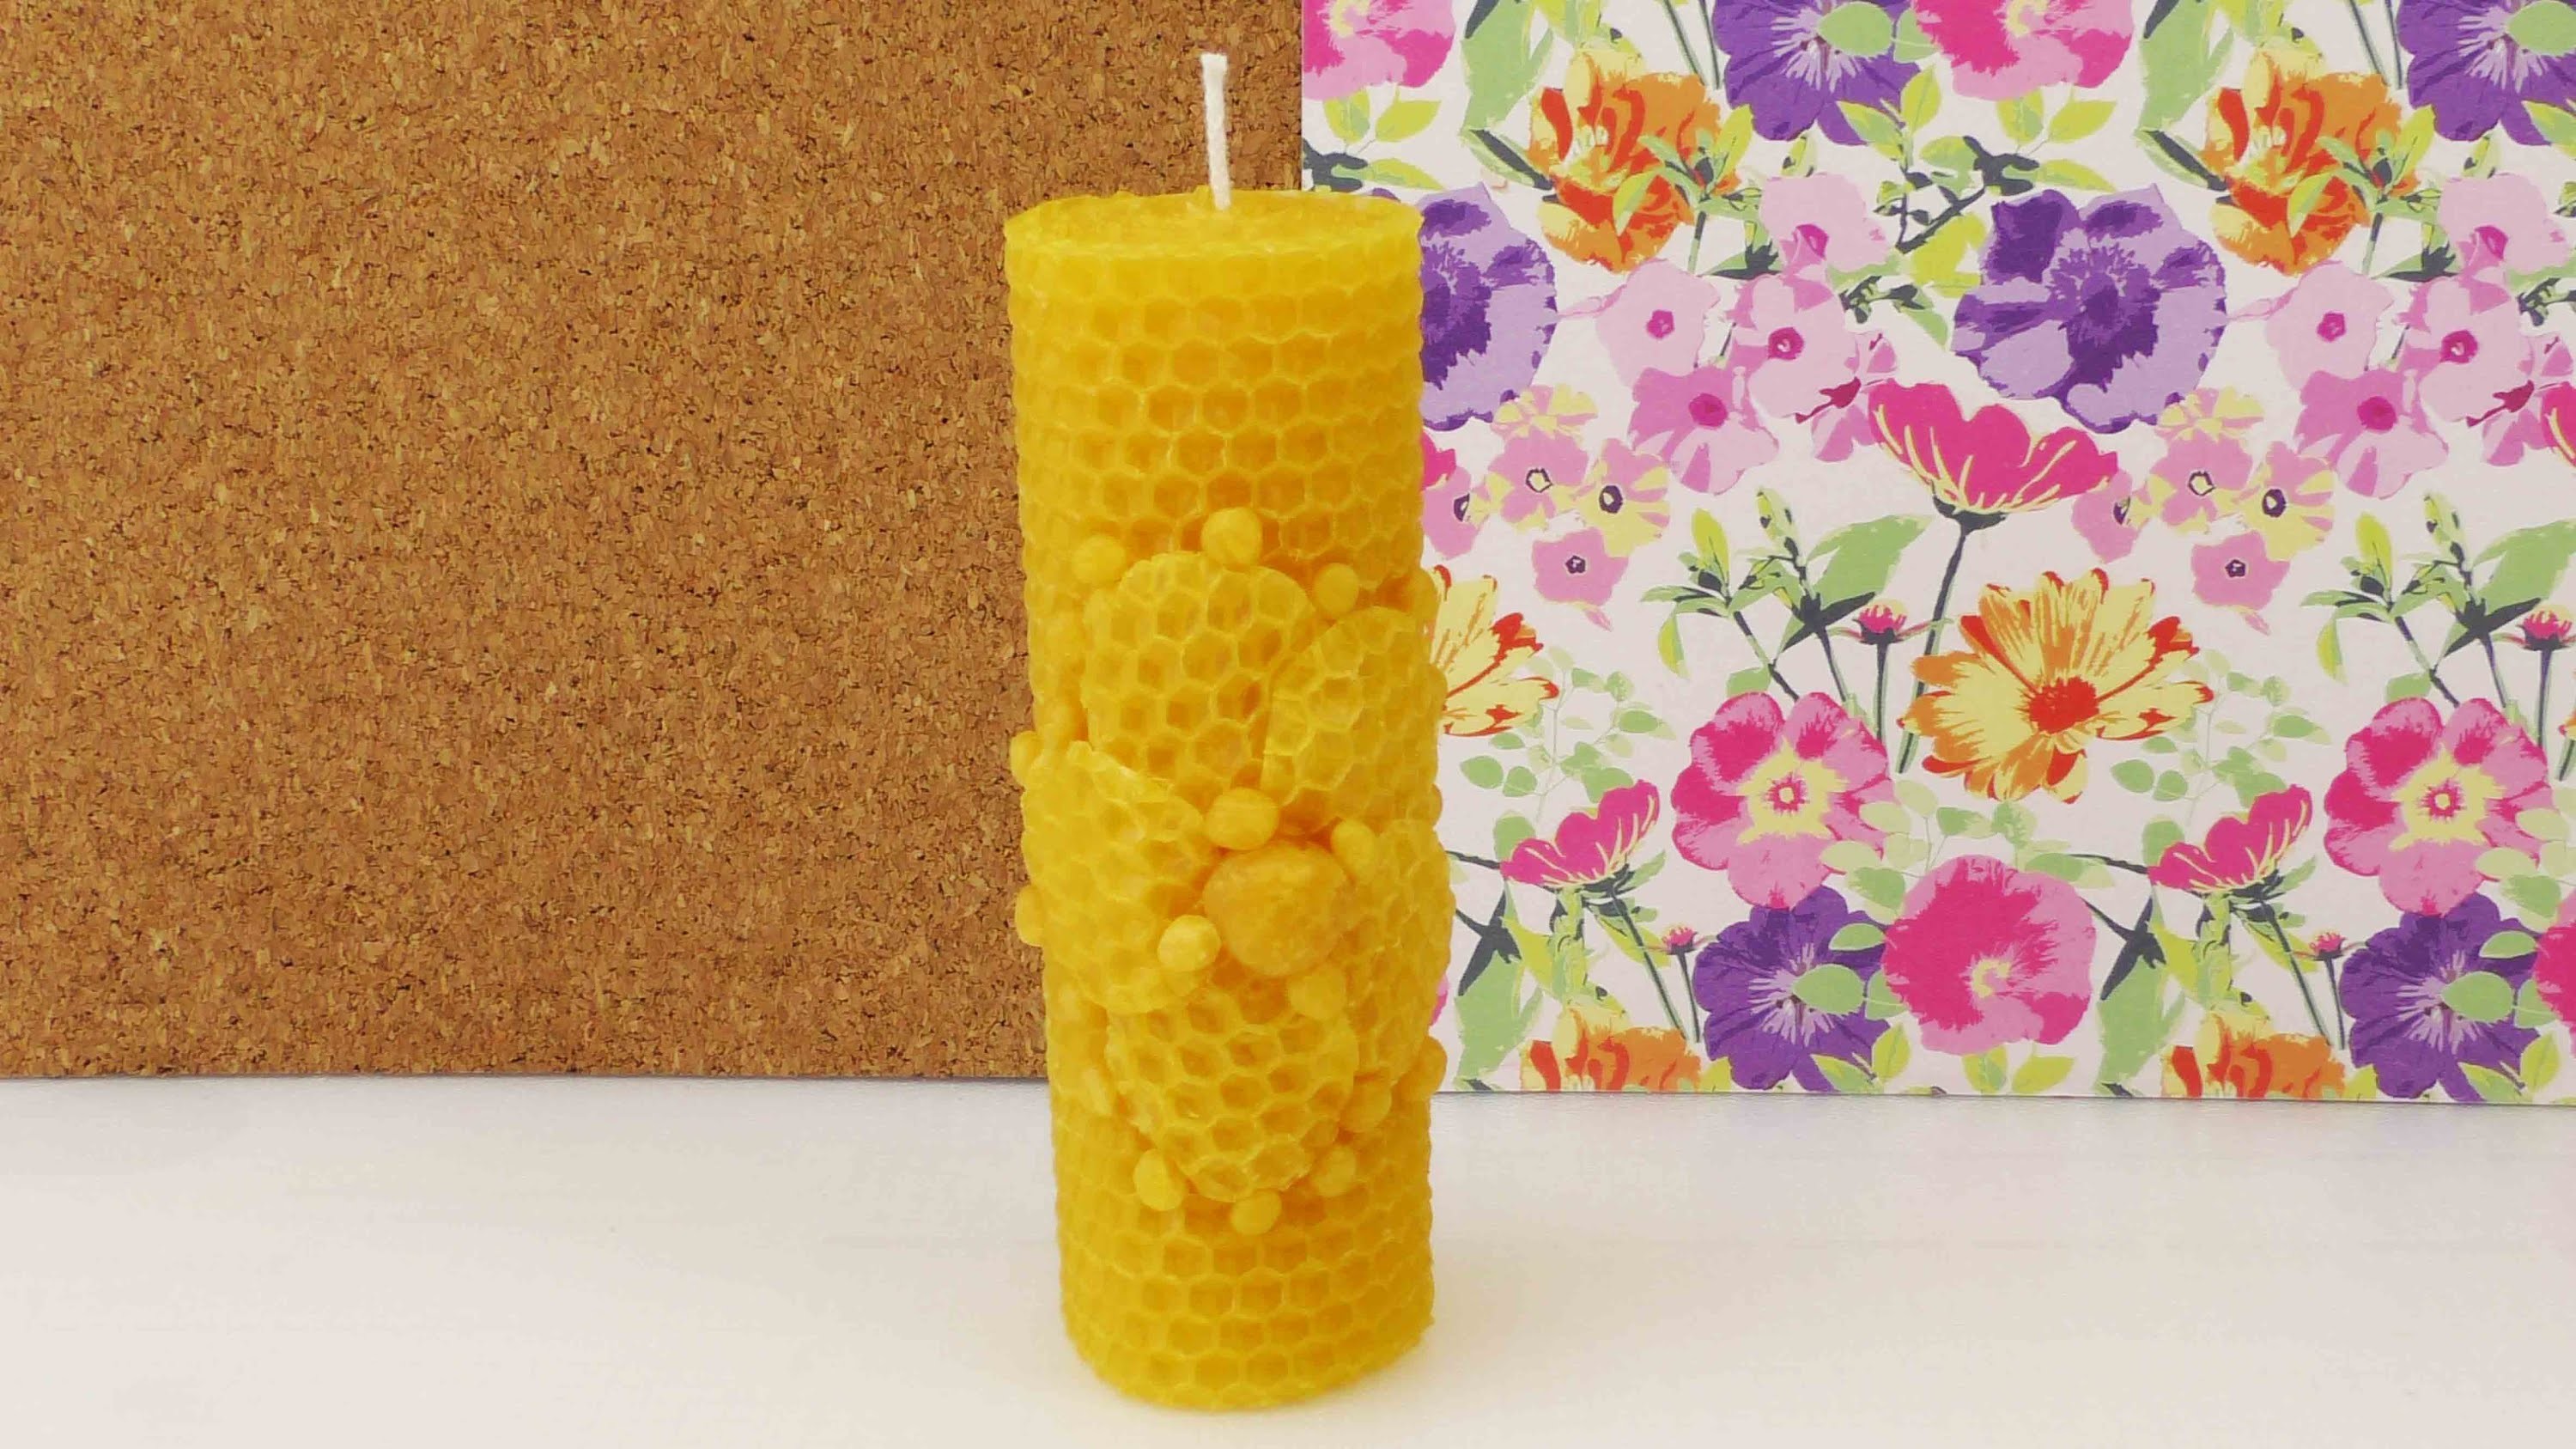 DIY Kerze aus Bienenwachsplatten | Blumen Motiv | tolle Geschenkidee selber machen